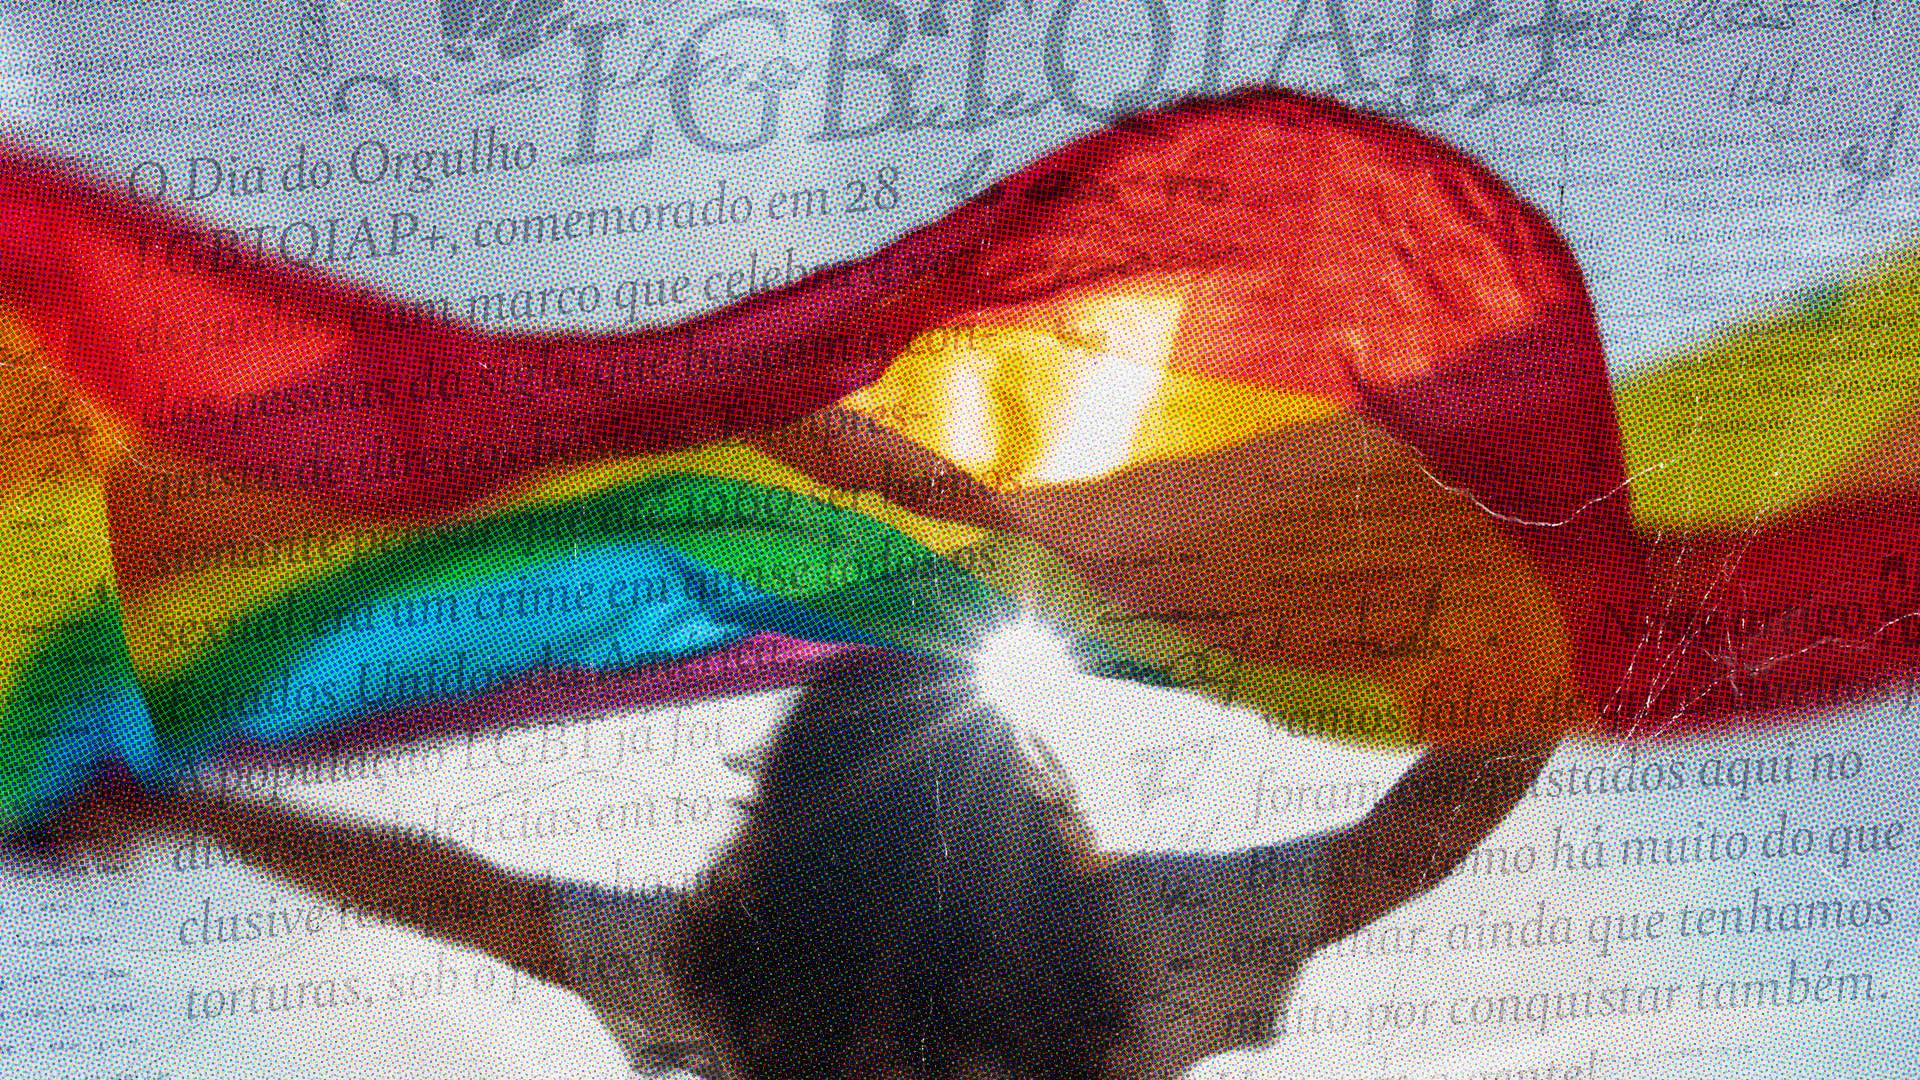 Conheça as conquistas do movimento LGBT no Brasil